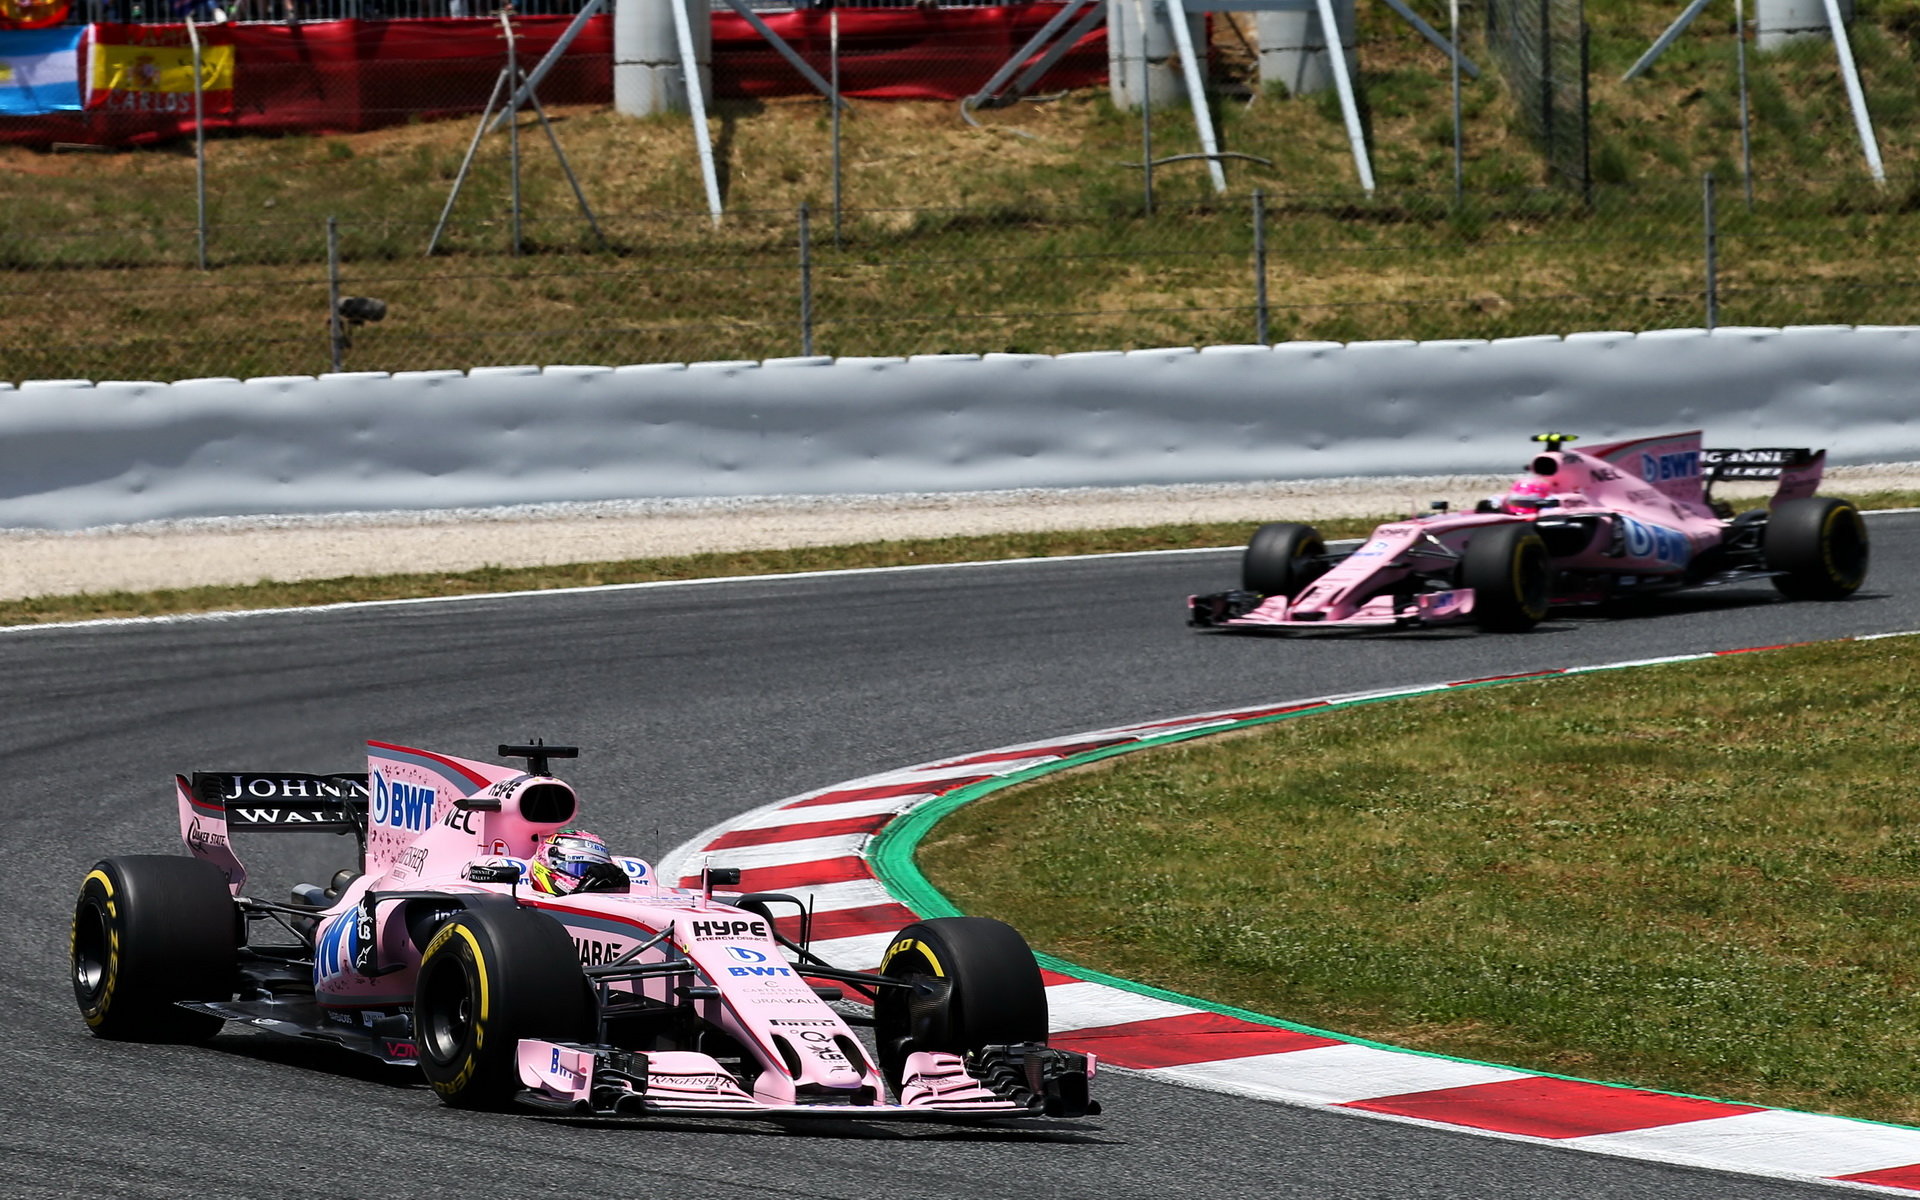 Po Kanadě bude asi v týmu Force India napjatá nálada (ilustrační foto)